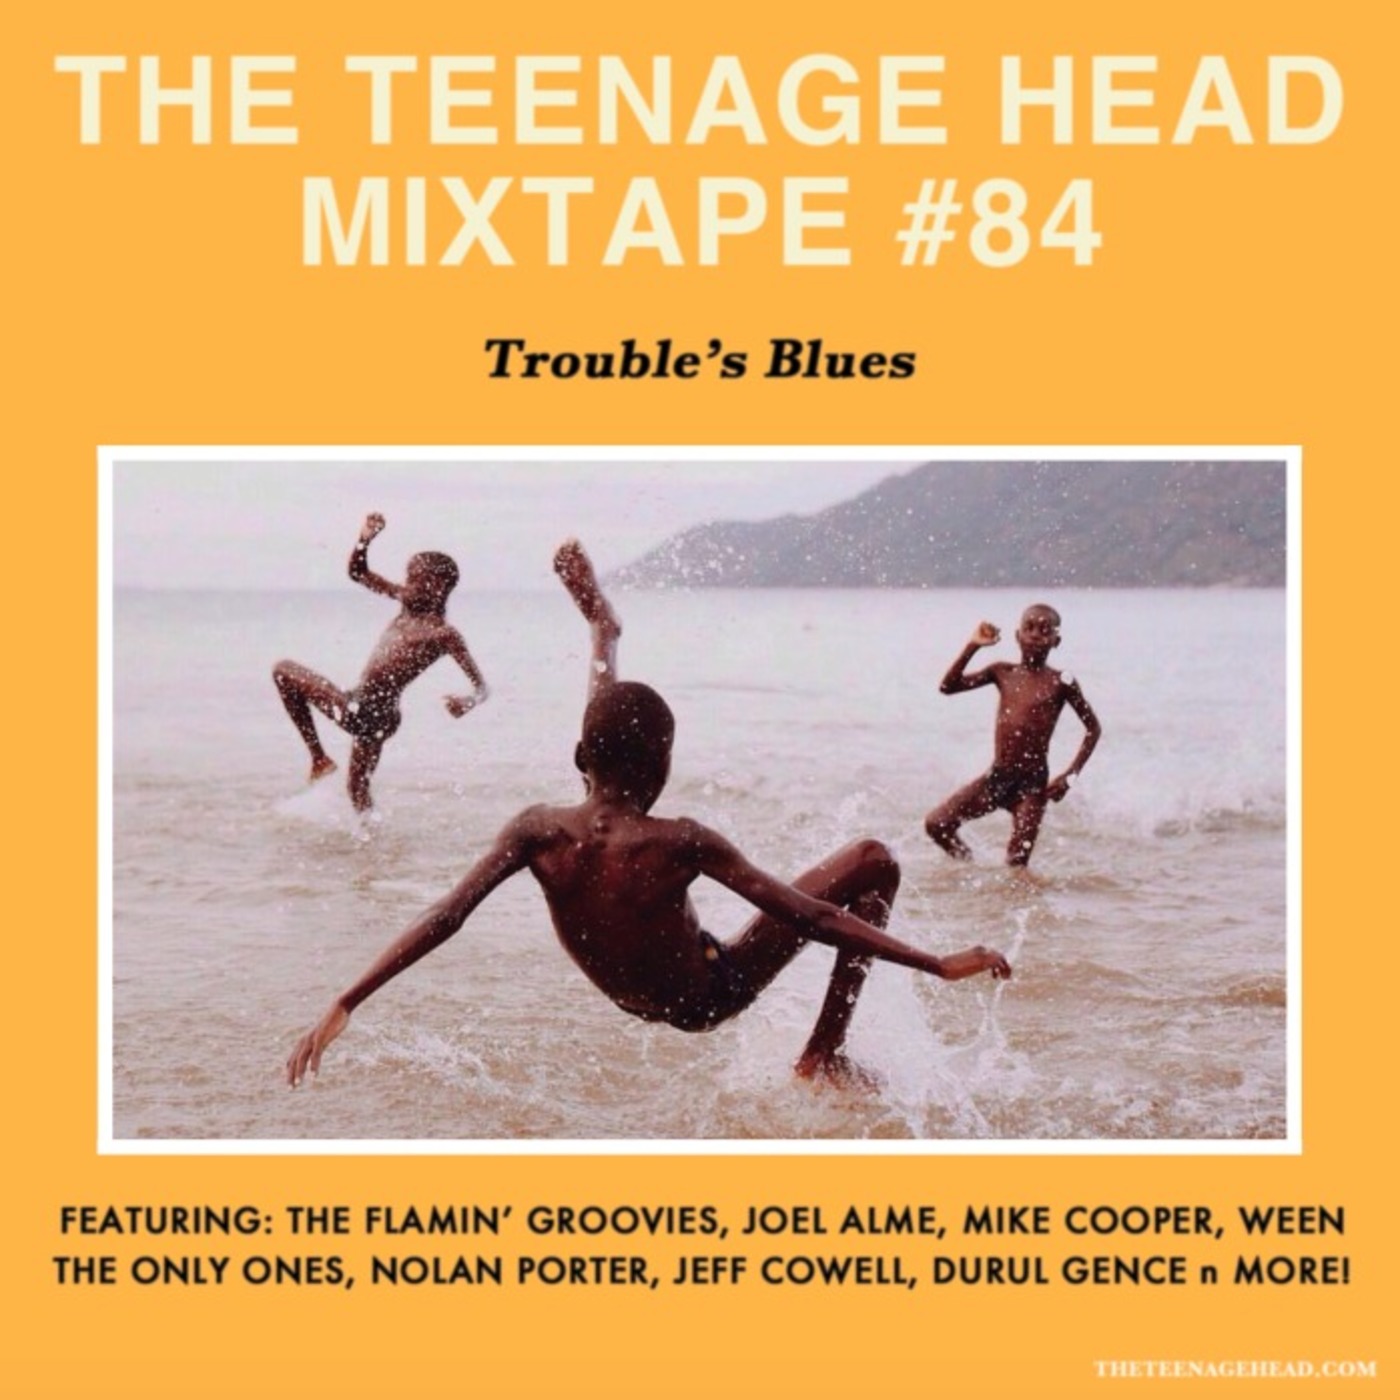 Mixtape #84: Trouble's Blues